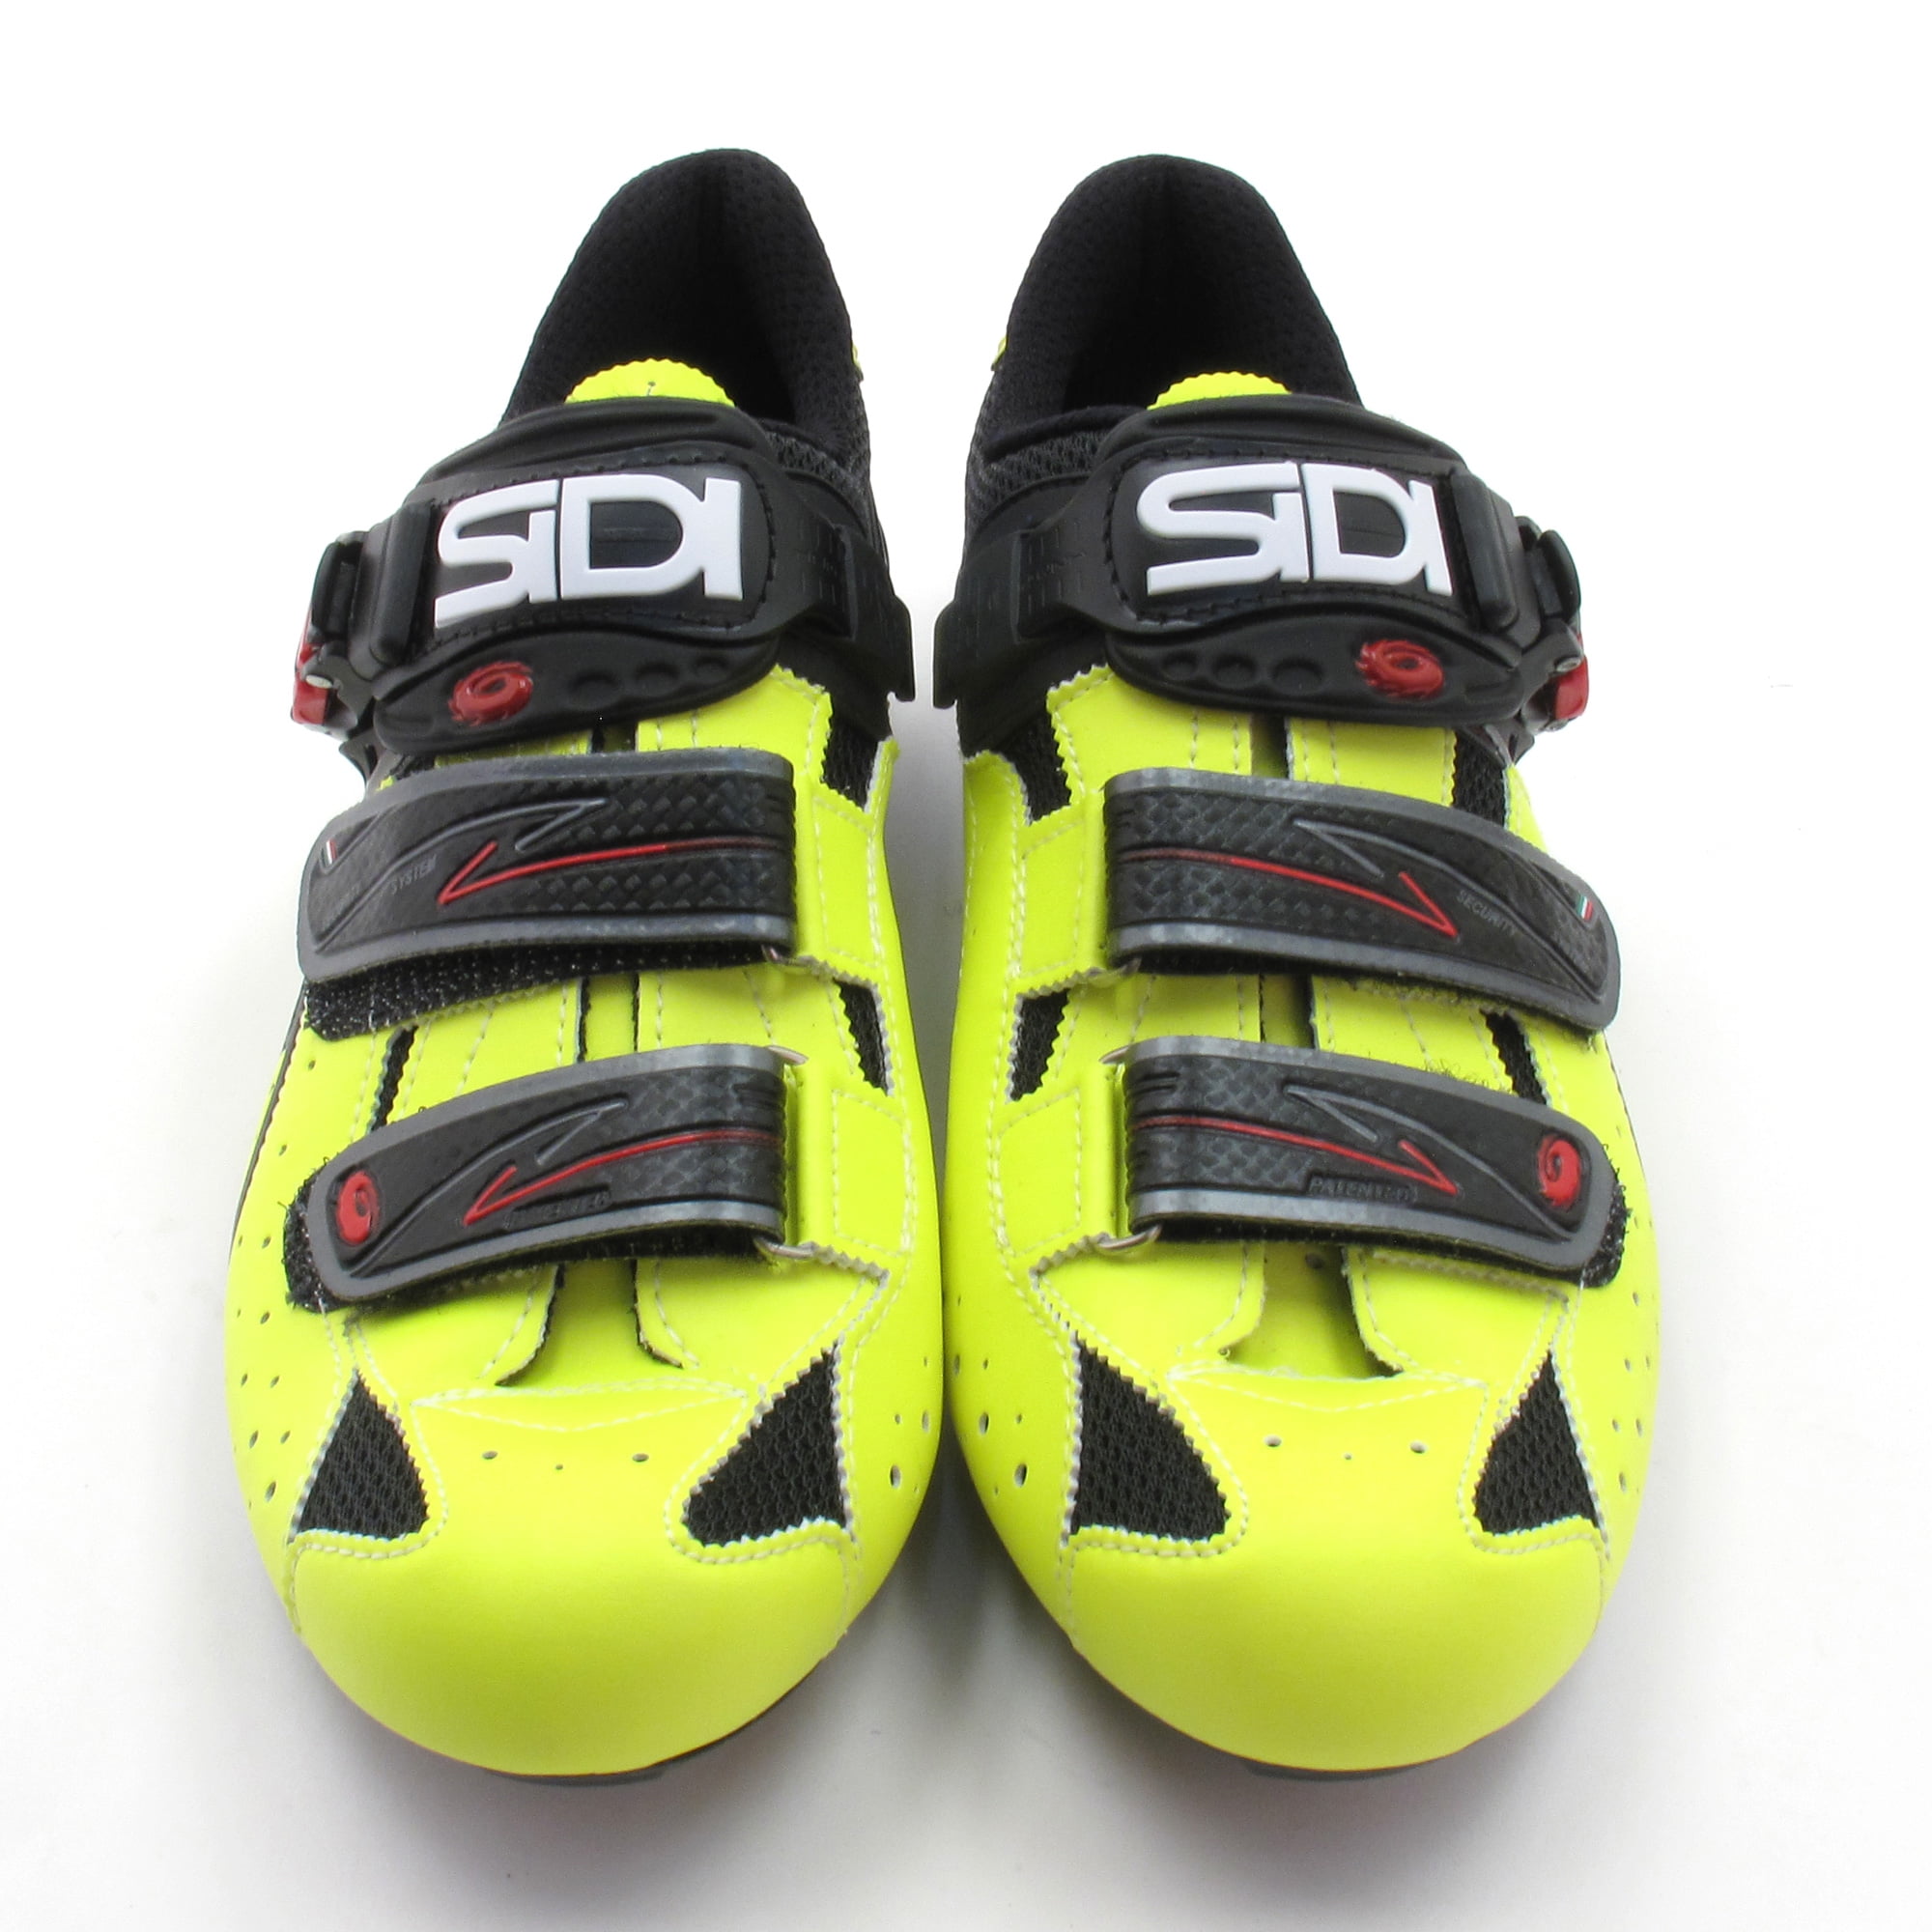 Sidi Genius 5 Fit Black / Yellow Road Bike Cycling Shoes // EUR 42 US 8.25  - Walmart.com